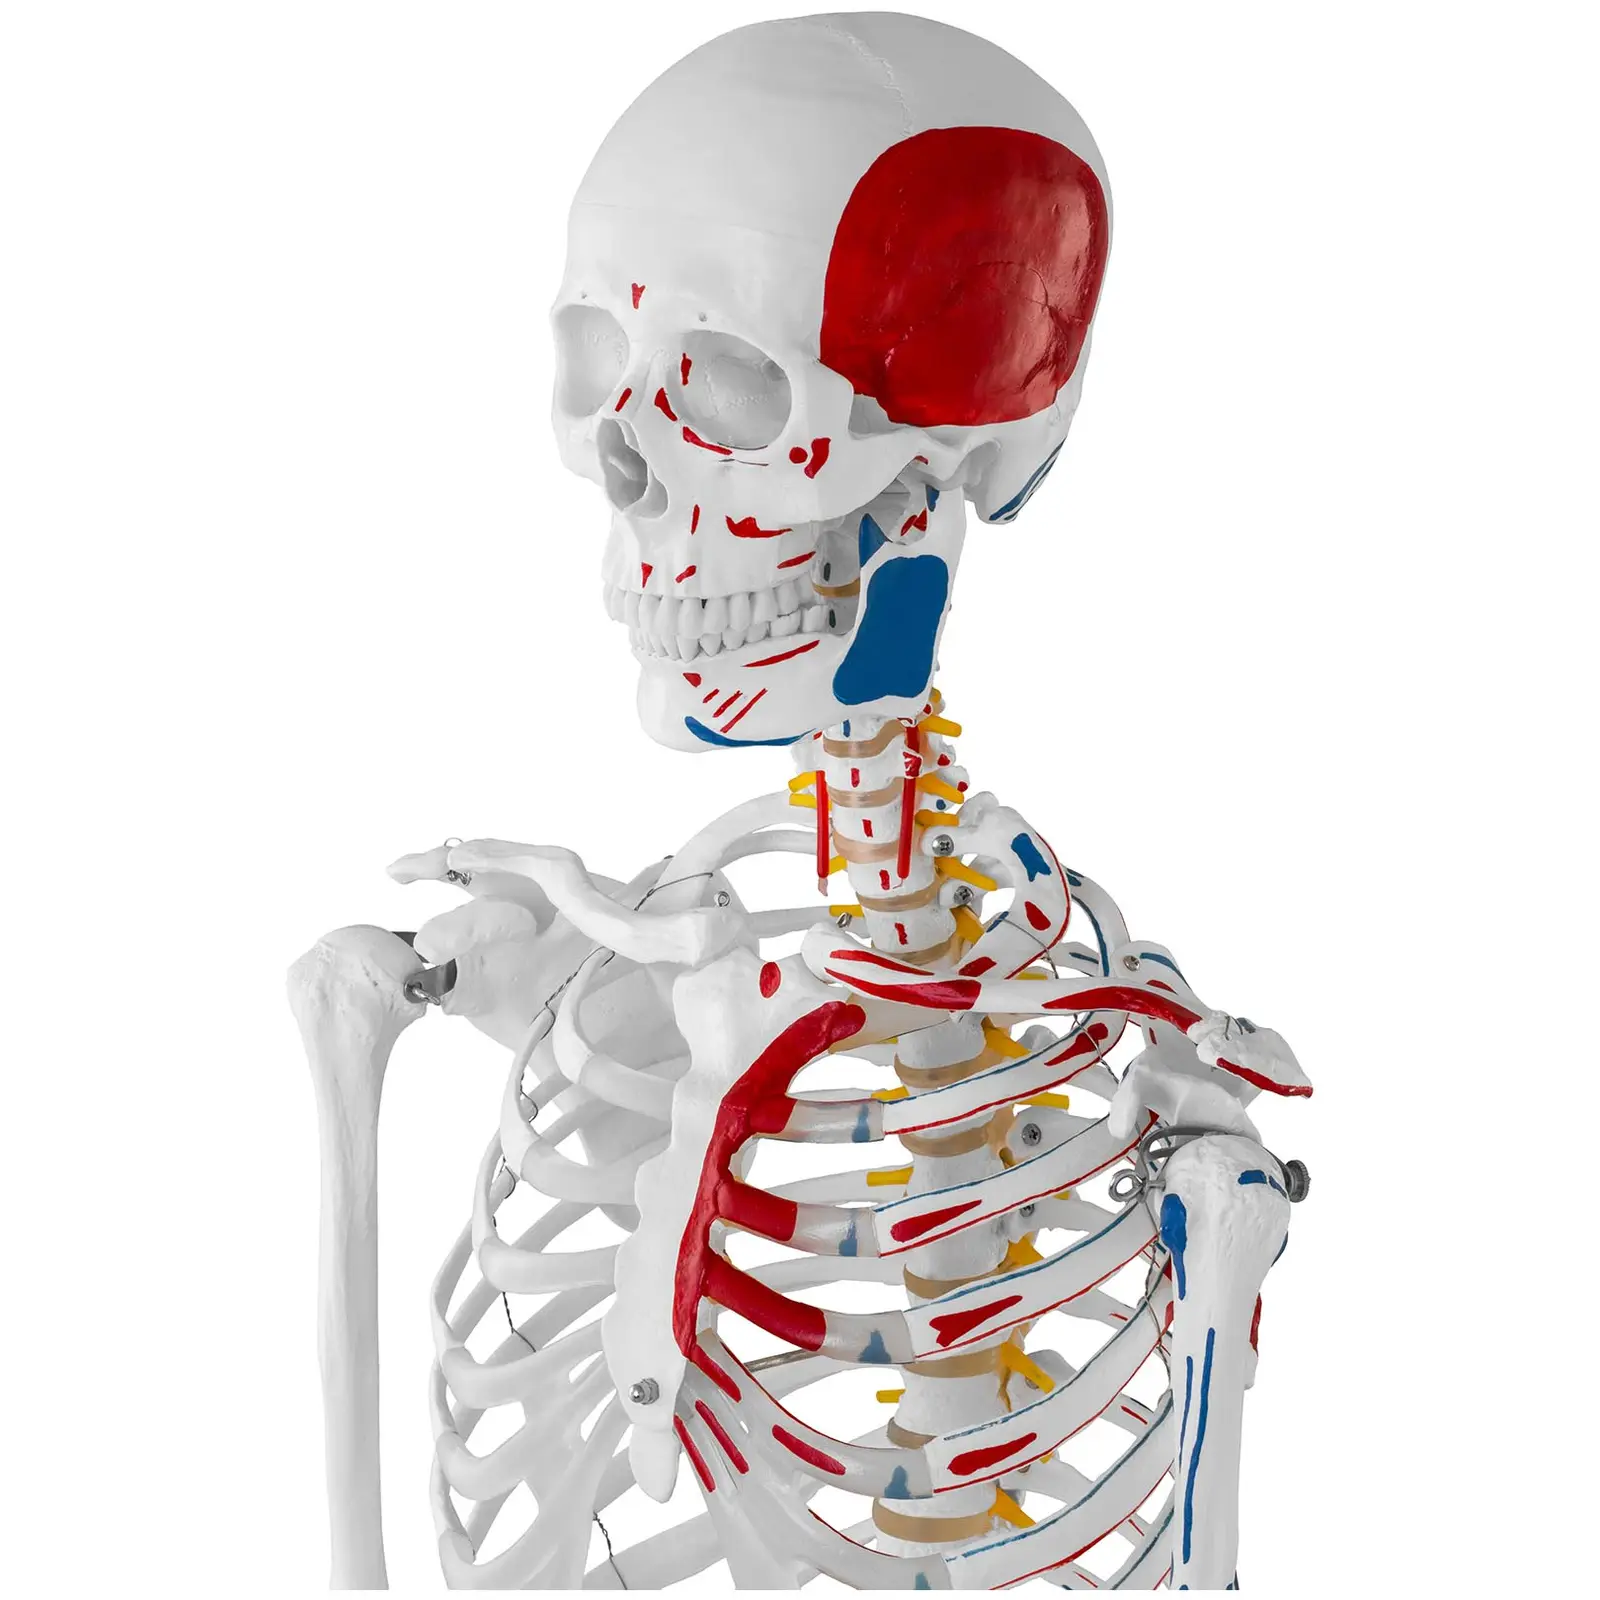 Modello scheletro umano - A grandezza naturale - Colorato - 2